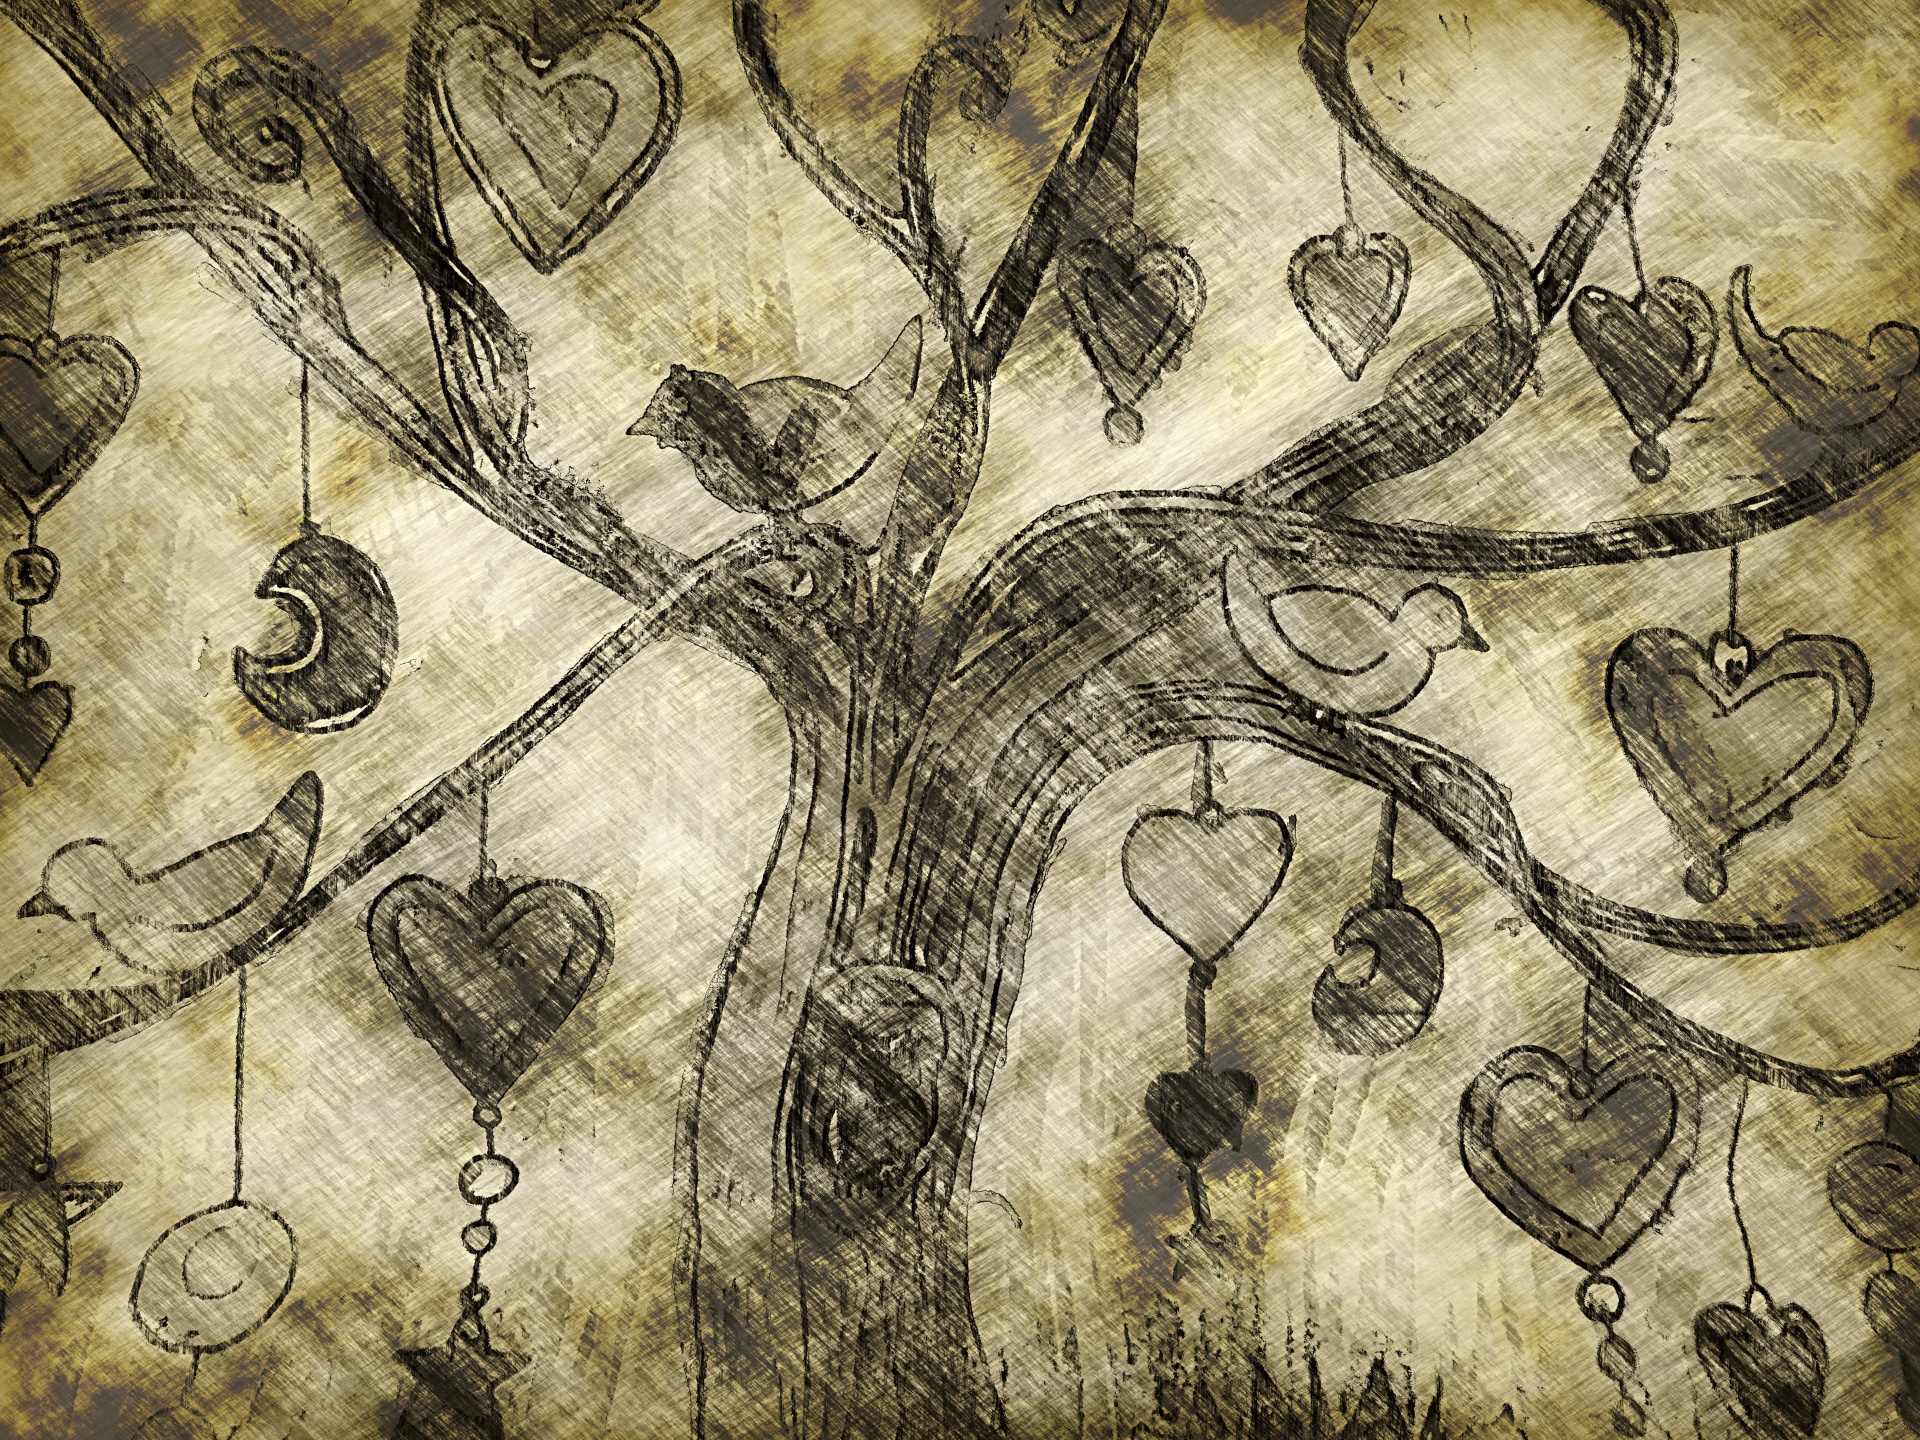 Baum, Vögel und Herzen